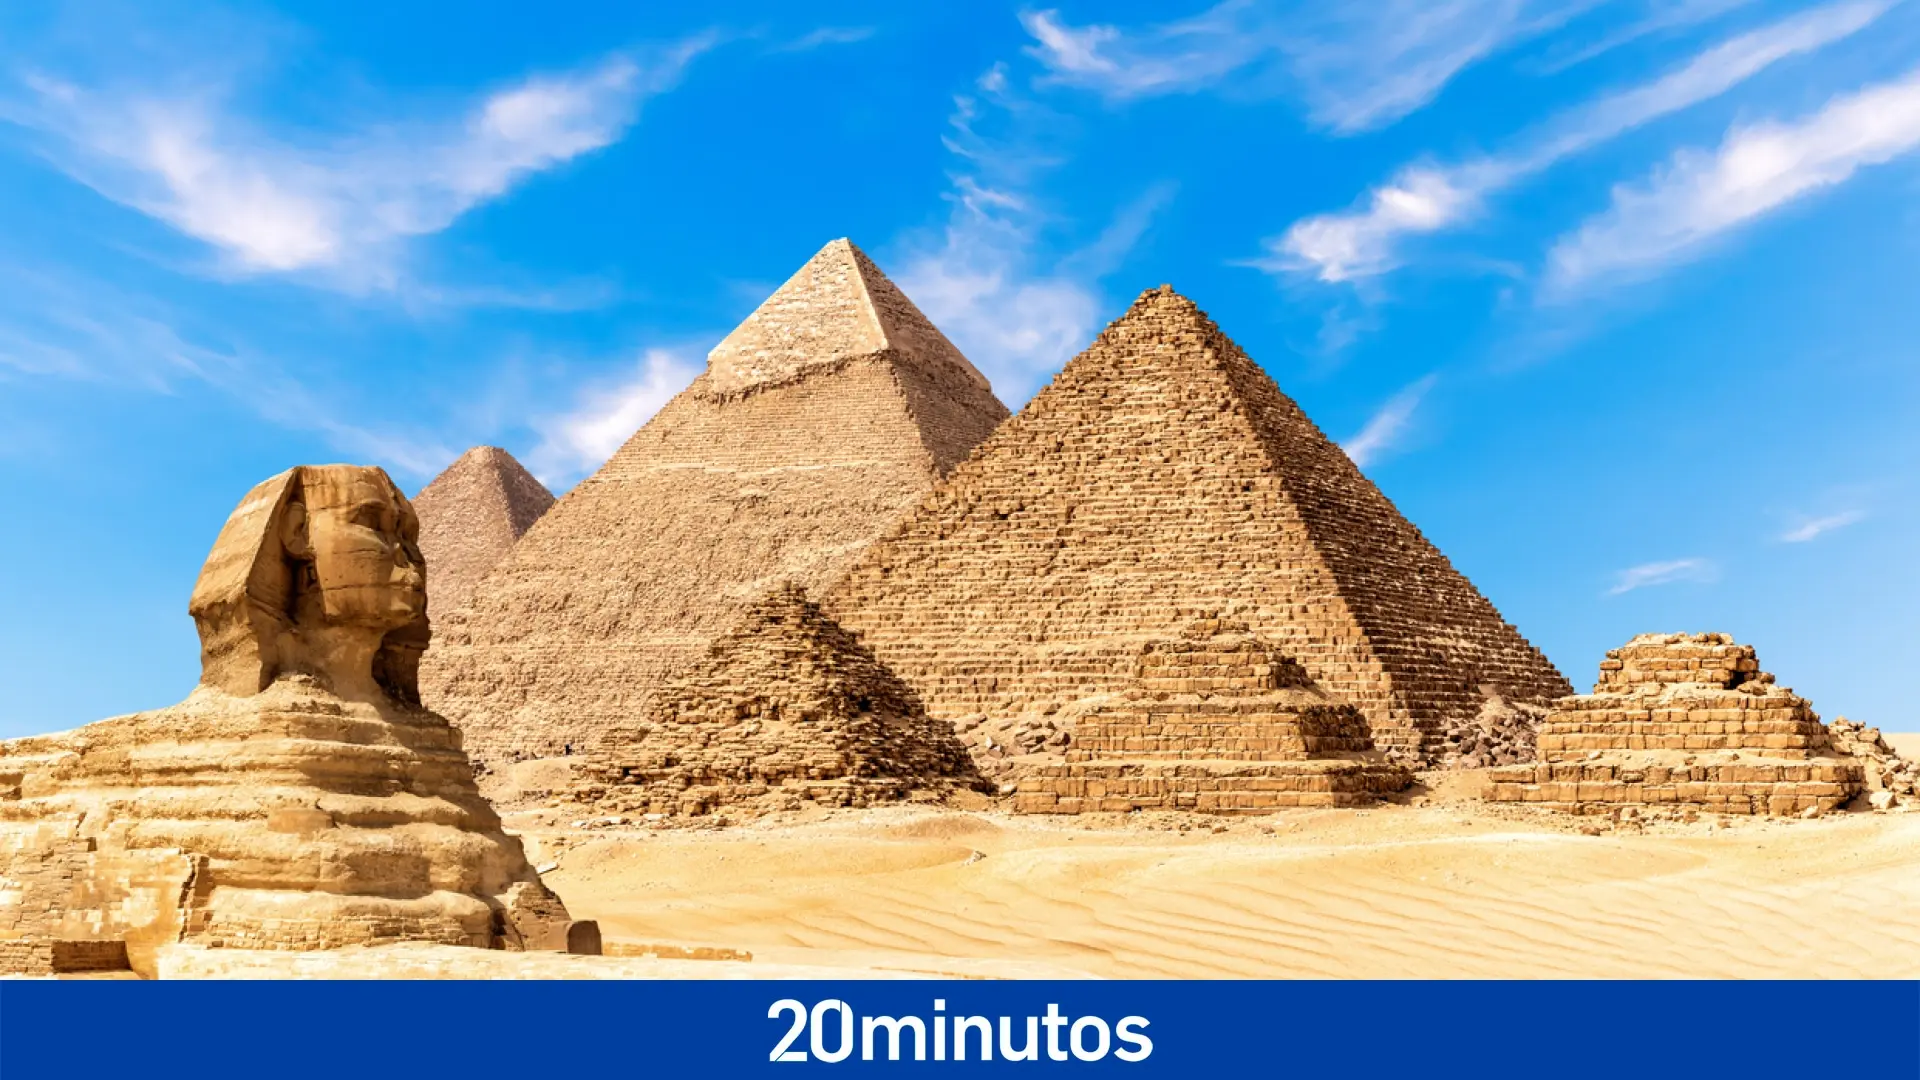 Descubre las pirámides de Egipto y su grandiosidad